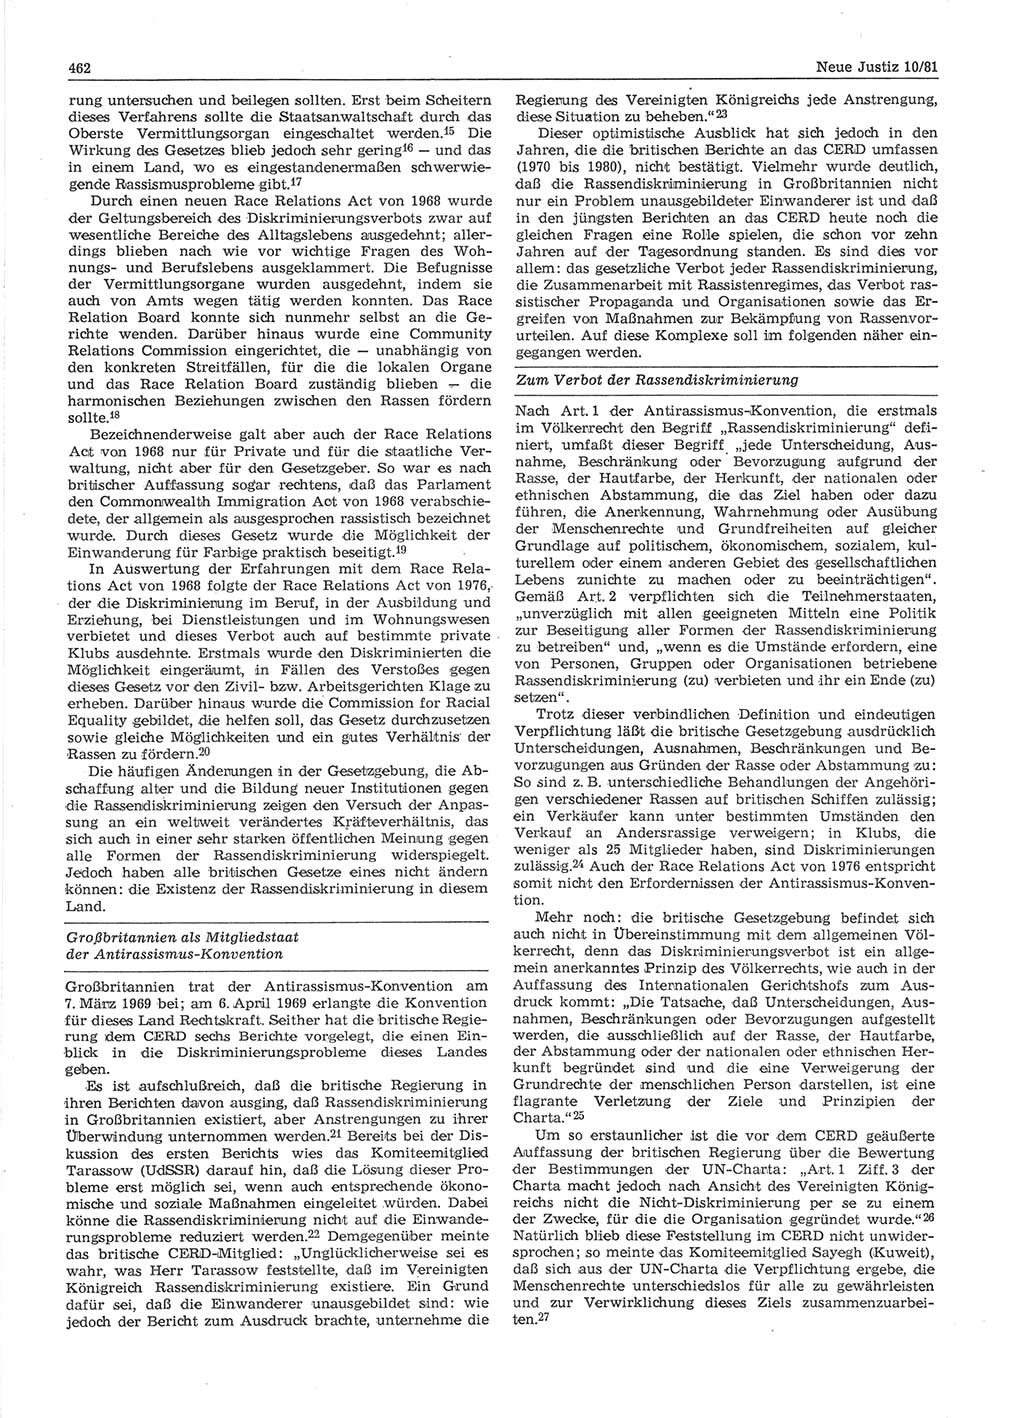 Neue Justiz (NJ), Zeitschrift für sozialistisches Recht und Gesetzlichkeit [Deutsche Demokratische Republik (DDR)], 35. Jahrgang 1981, Seite 462 (NJ DDR 1981, S. 462)